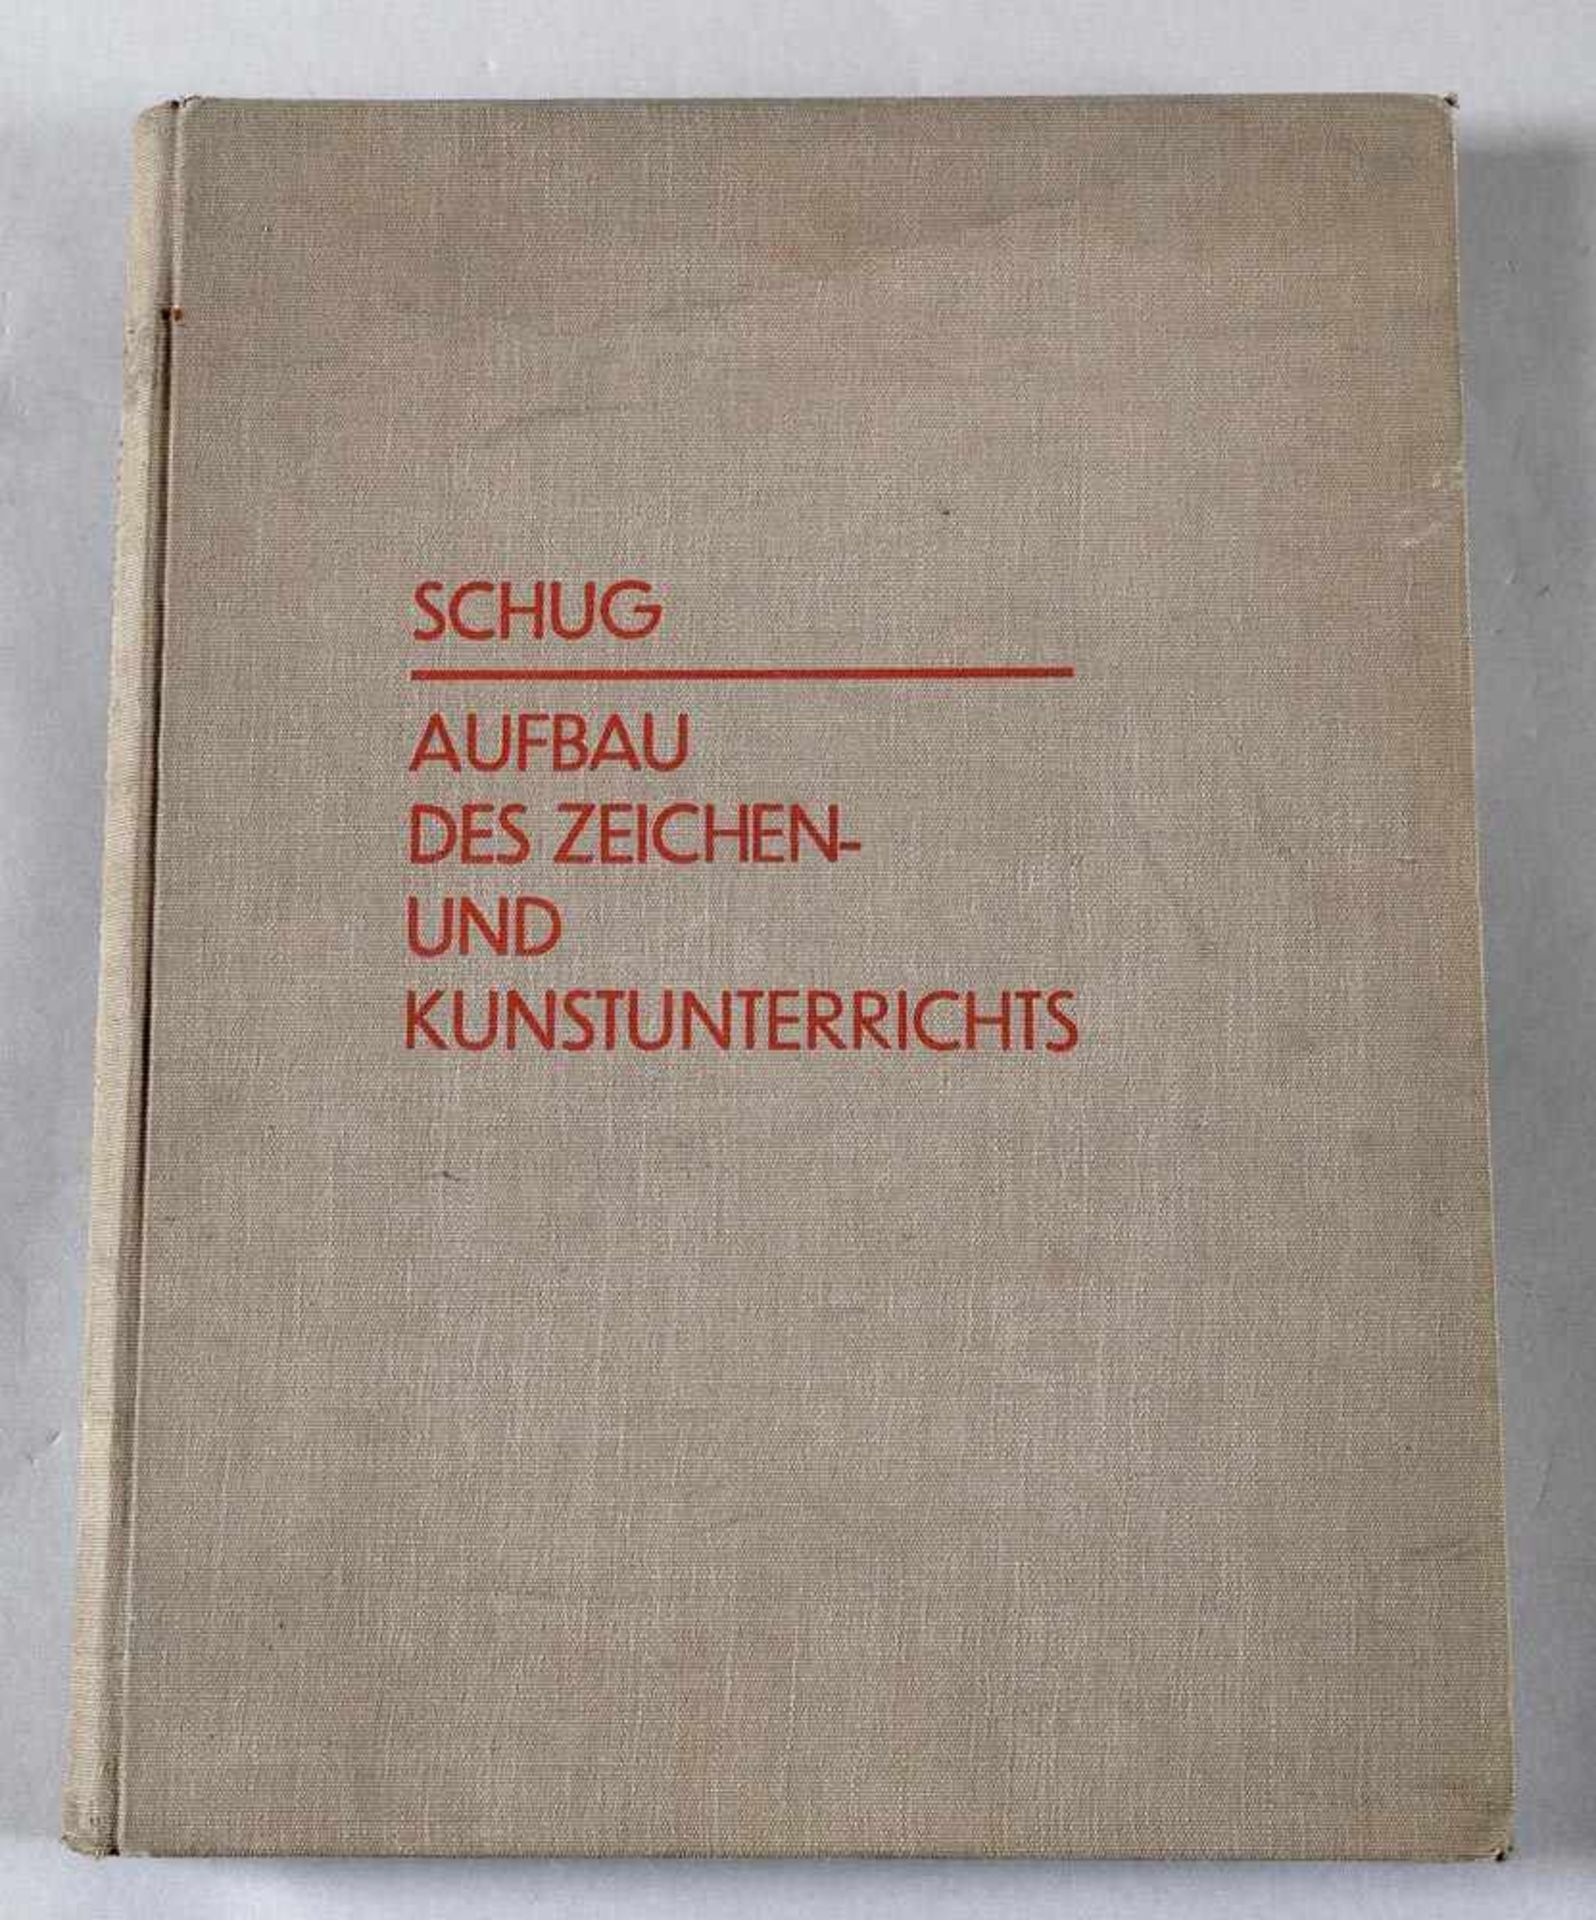 Jak. Schug "Aufbau des Zeichen- und Kunstunterrichts", 1930Leineneinband (leicht fleckig und